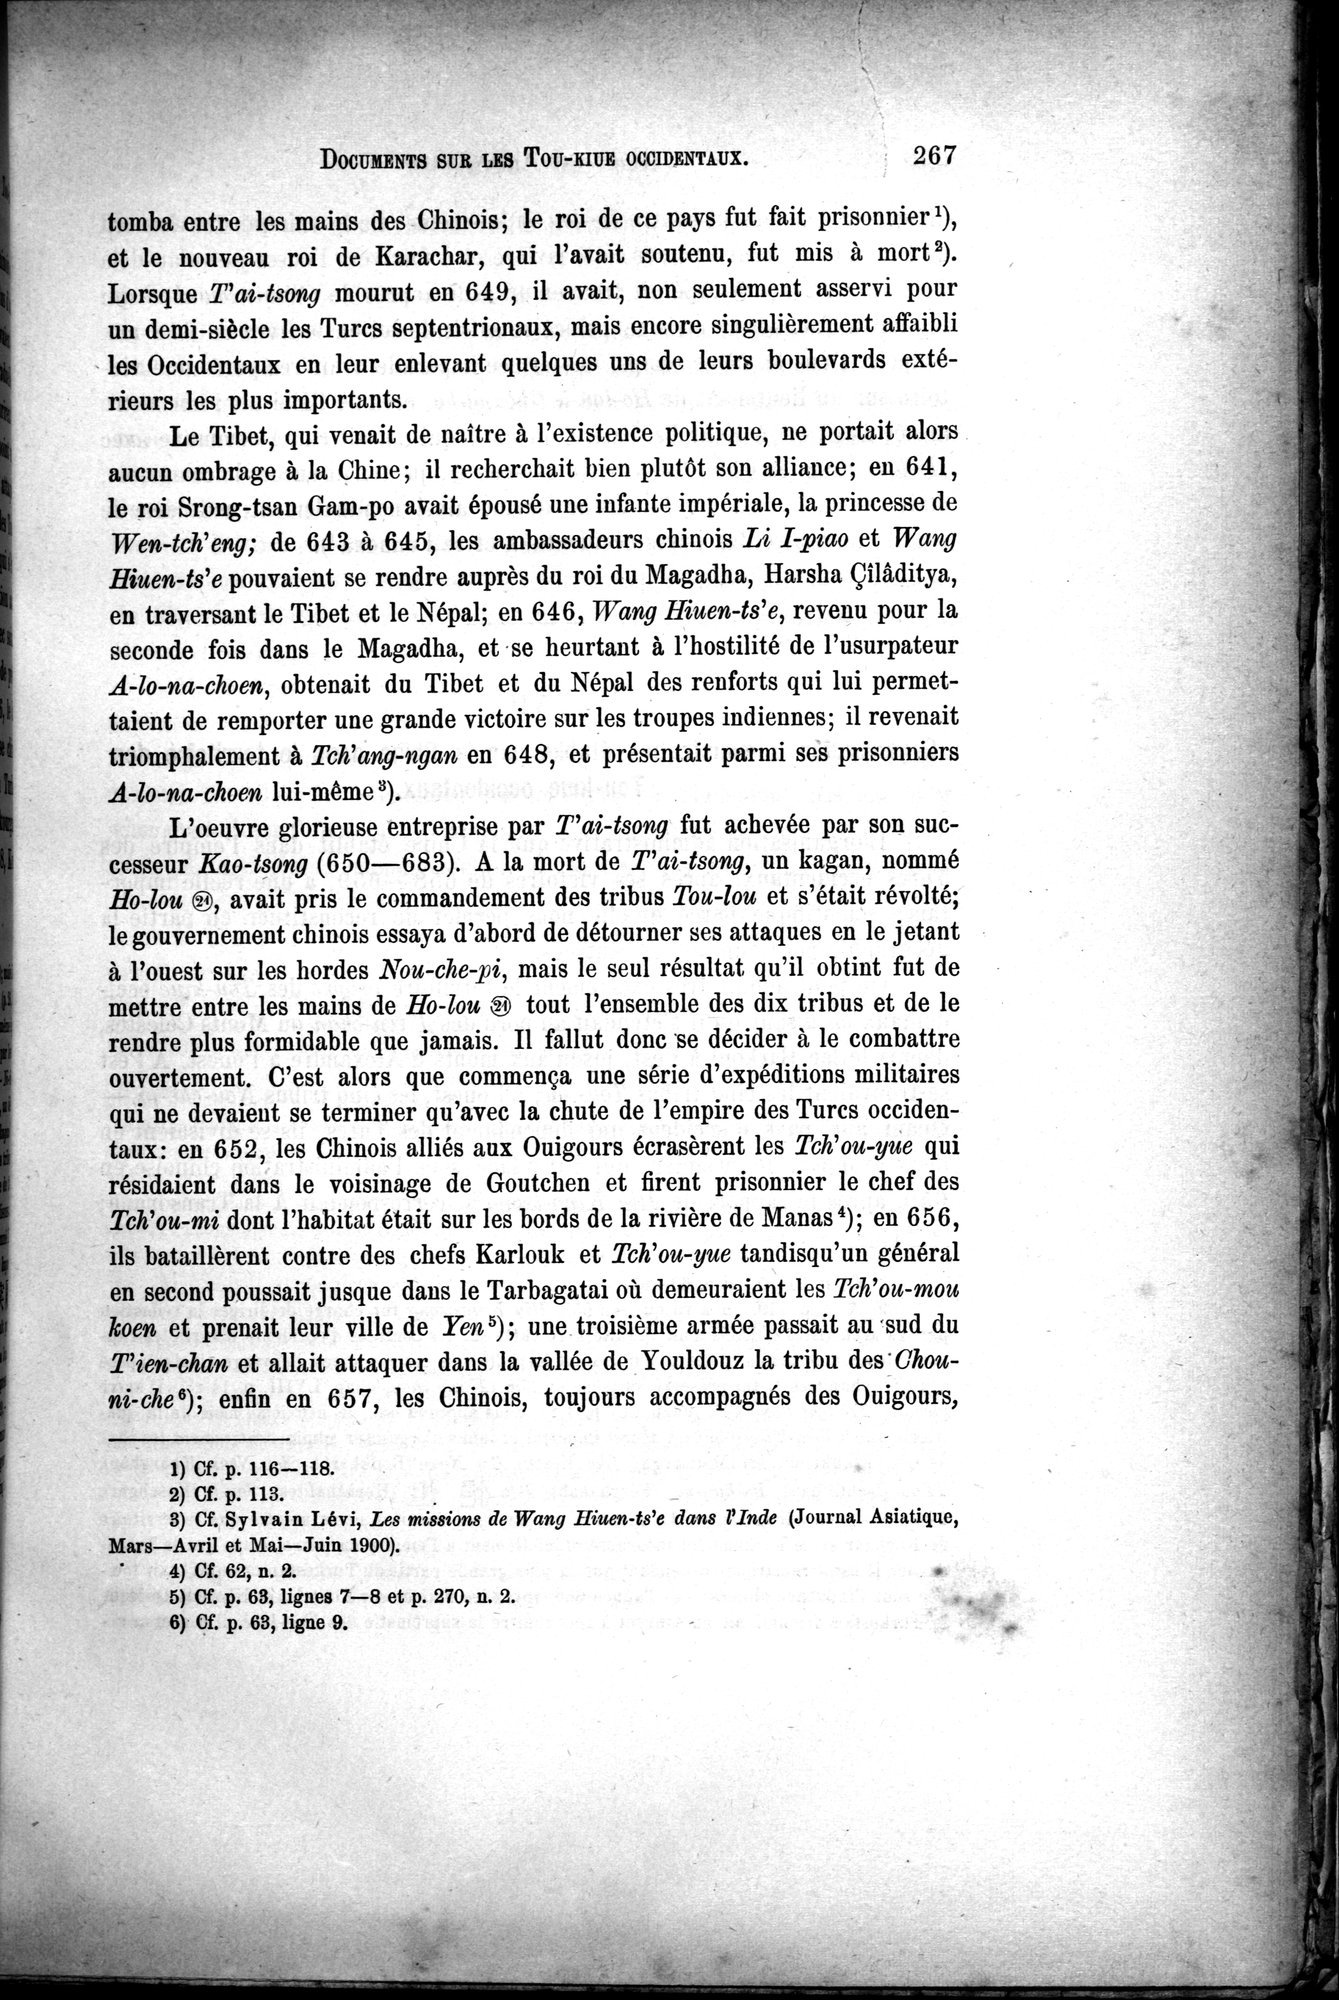 Documents sur les Tou-kiue (Turcs) occidentaux : vol.1 / Page 277 (Grayscale High Resolution Image)